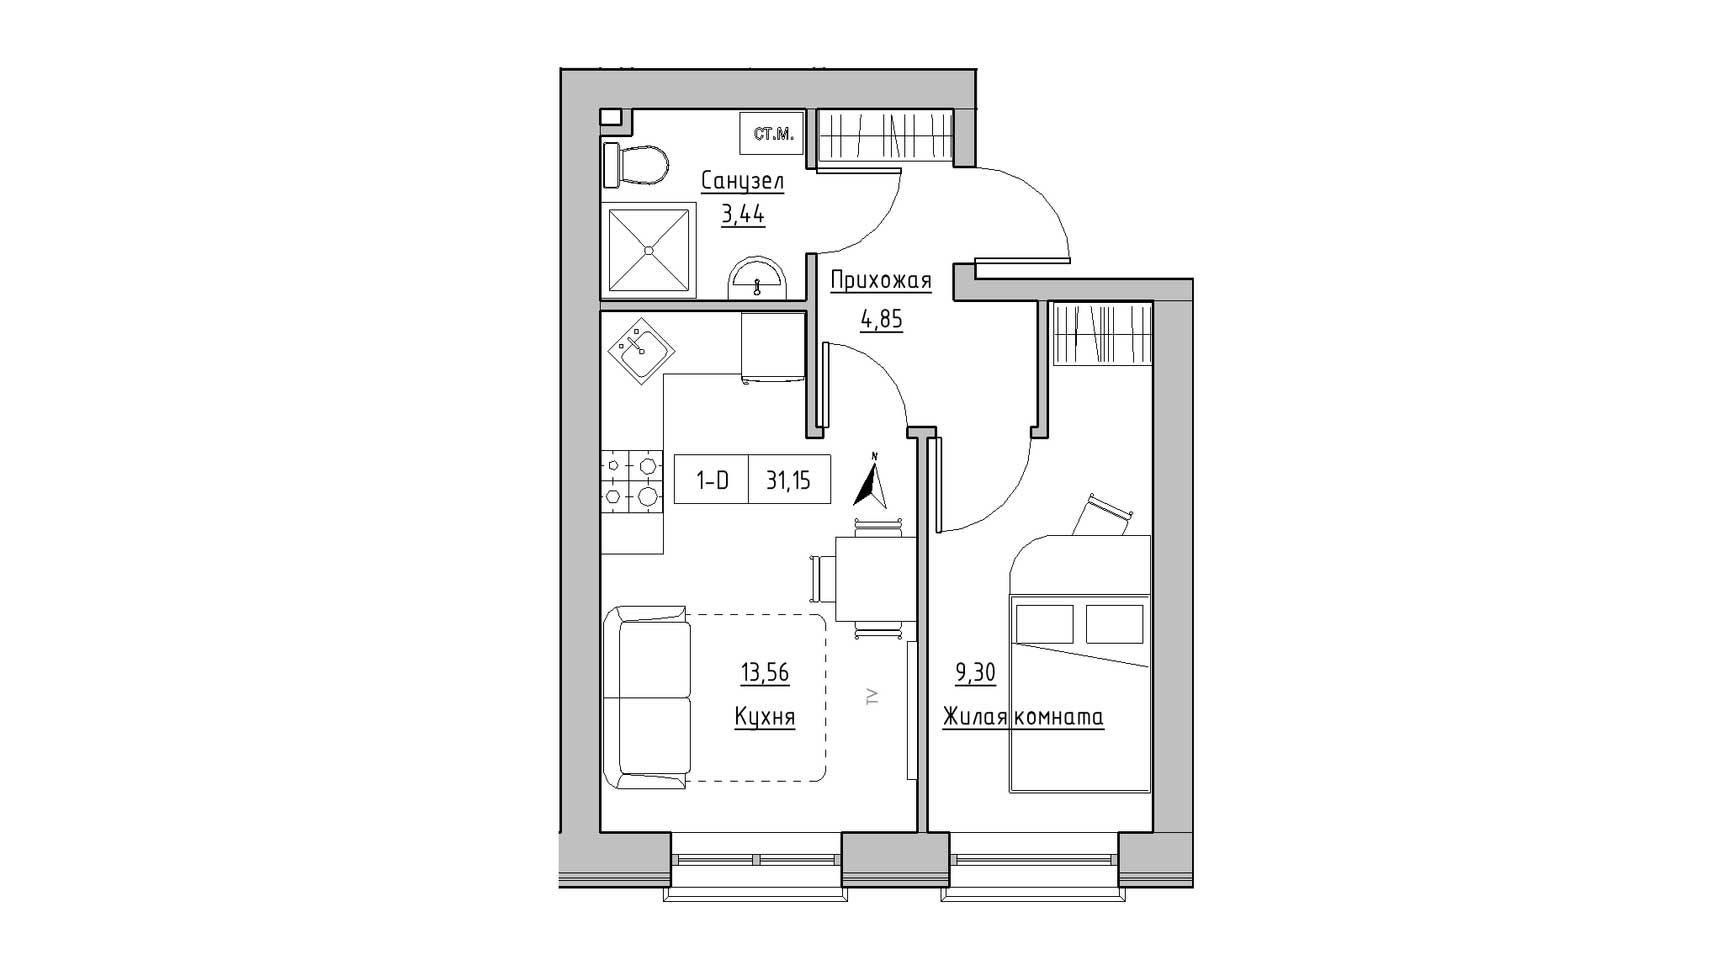 Планировка 1-к квартира площей 31.15м2, KS-010-01/0003.